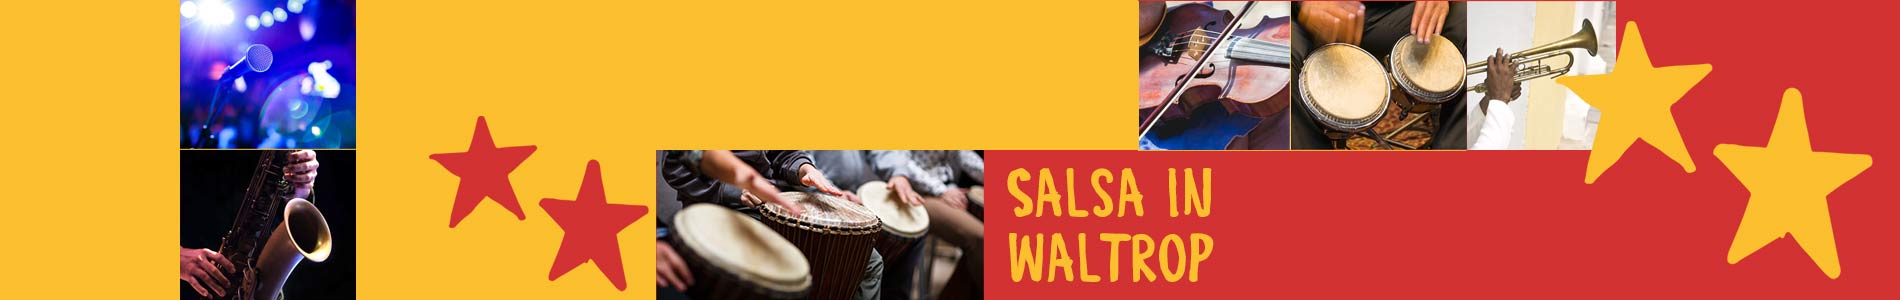 Salsa in Waltrop – Salsa lernen und tanzen, Tanzkurse, Partys, Veranstaltungen